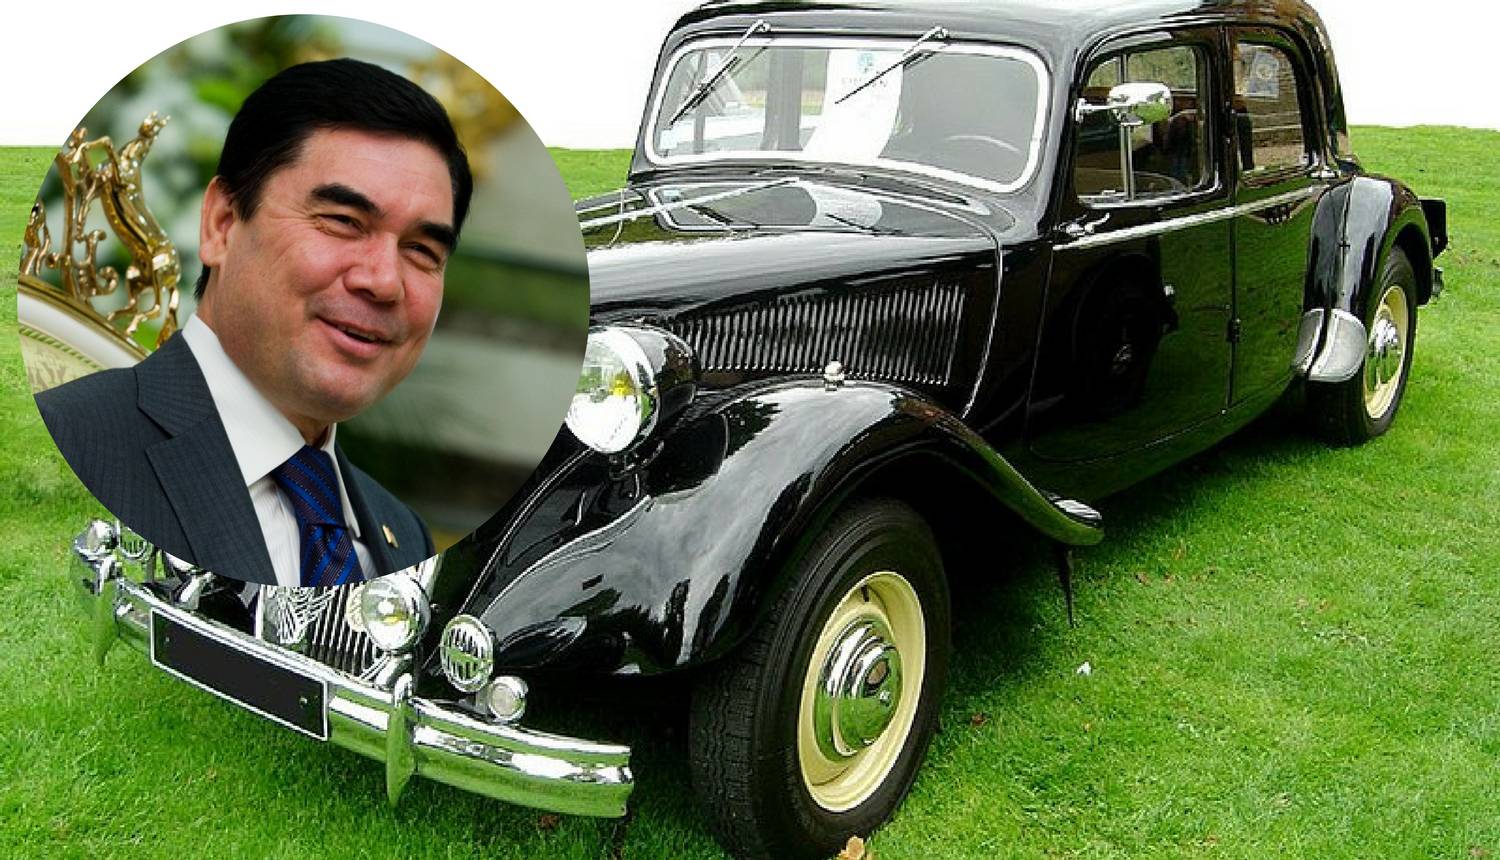 Predsjednik Turkmenistana je zabranio crne aute, voli bijele...